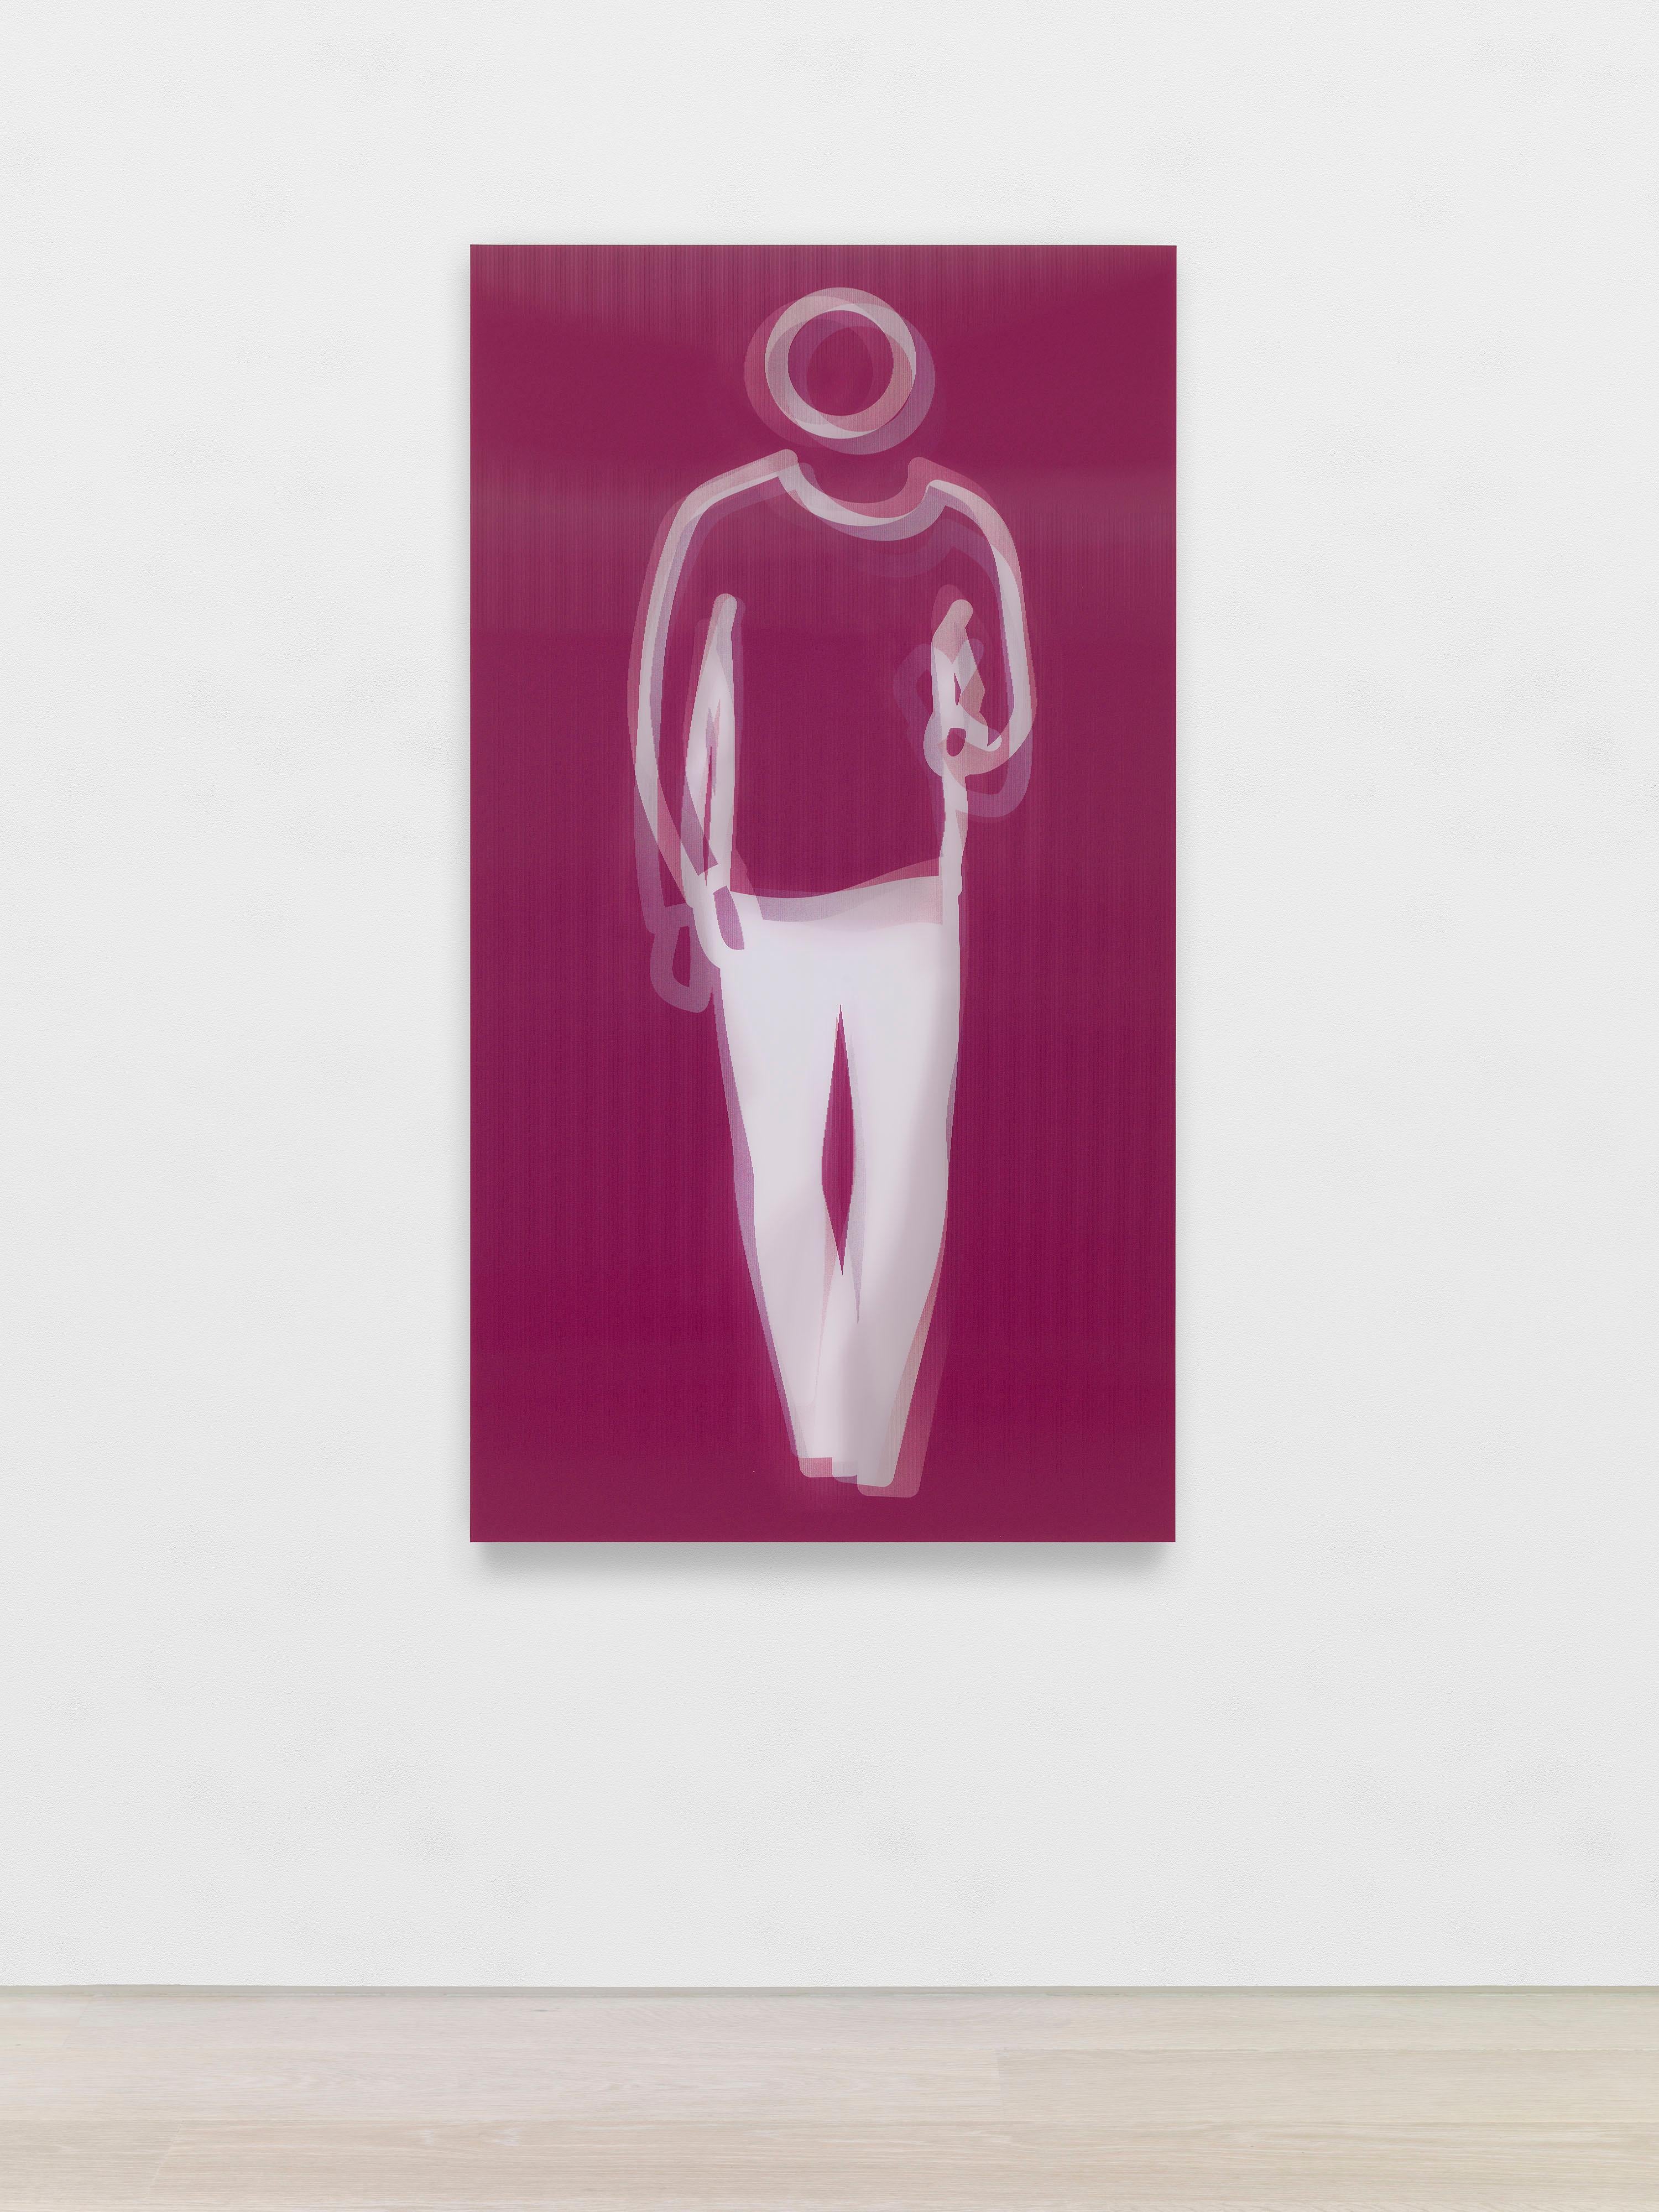 Figurative Print Julian Opie - Moving Large Contemporary Acrylic Panel of Dancing Figure, Four Colors, Dance 4 (panneau acrylique contemporain de grande taille représentant une figure dansante)